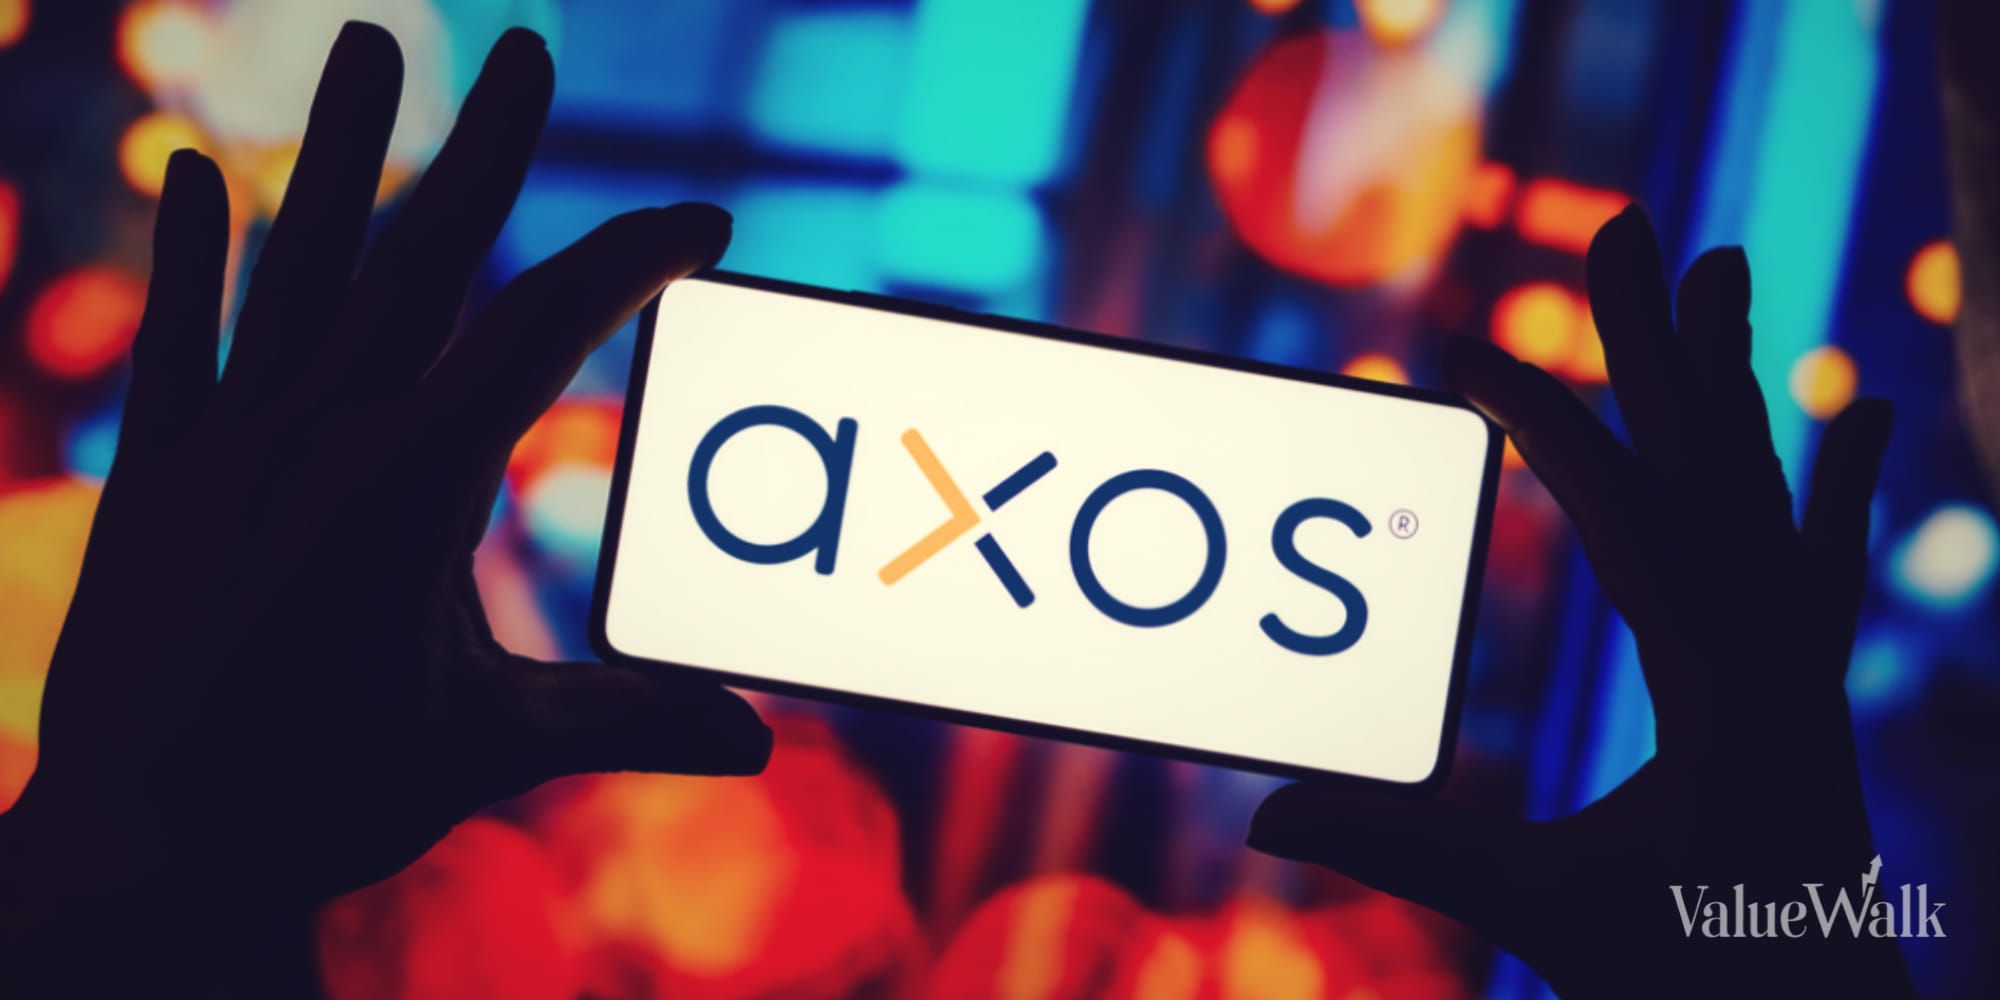 Axos Financial Cheap Bank Stock